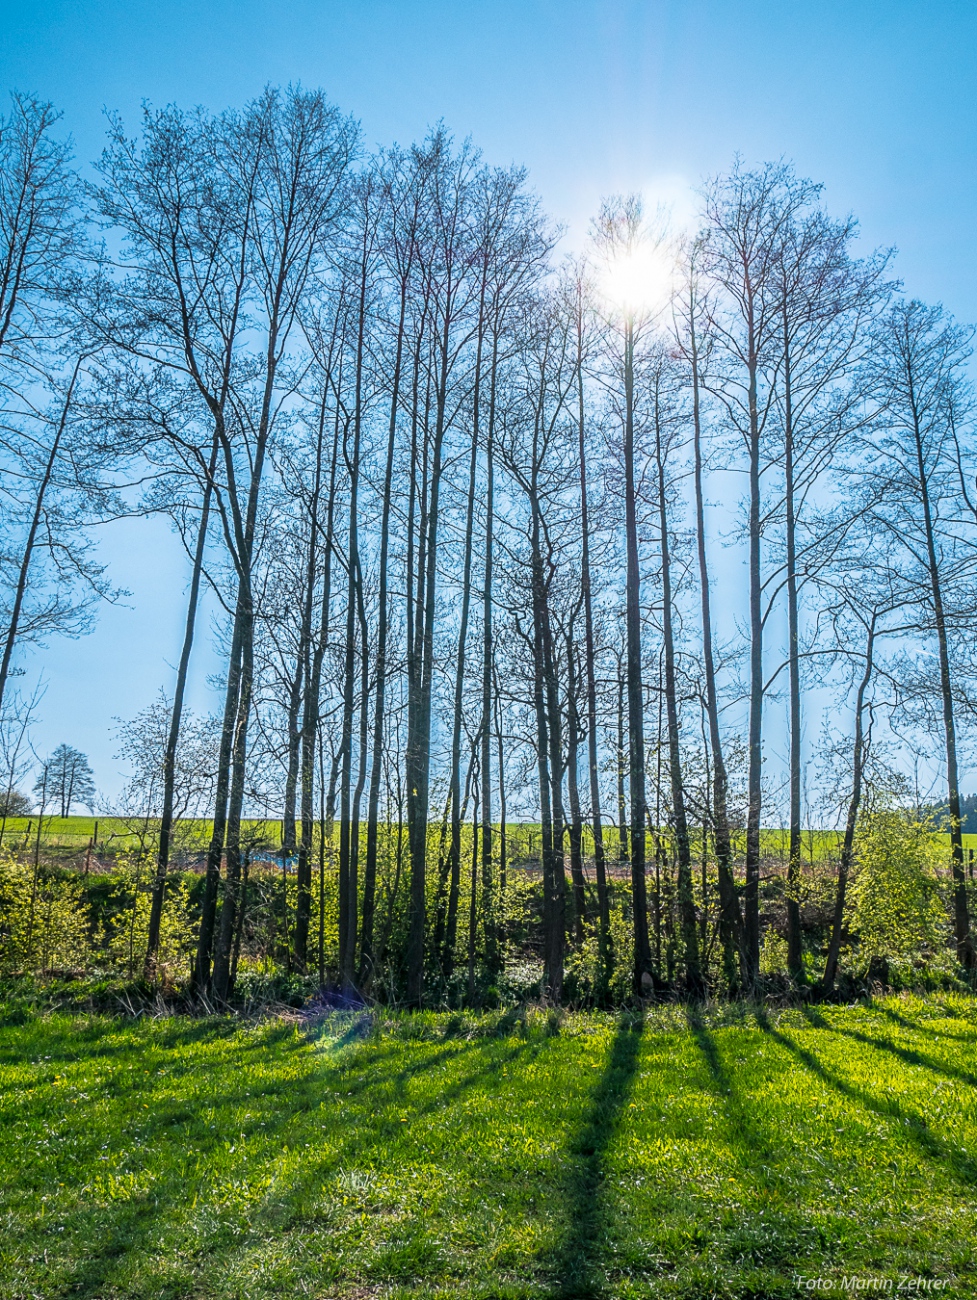 Foto: Martin Zehrer - Schatten-Wurf! Die Sonne, der blaue Himmel und die langen Baumschatten liefern traumhafte Kontraste.<br />
<br />
Wandern zur Tauritzmühle am Karfreitag 2019... 